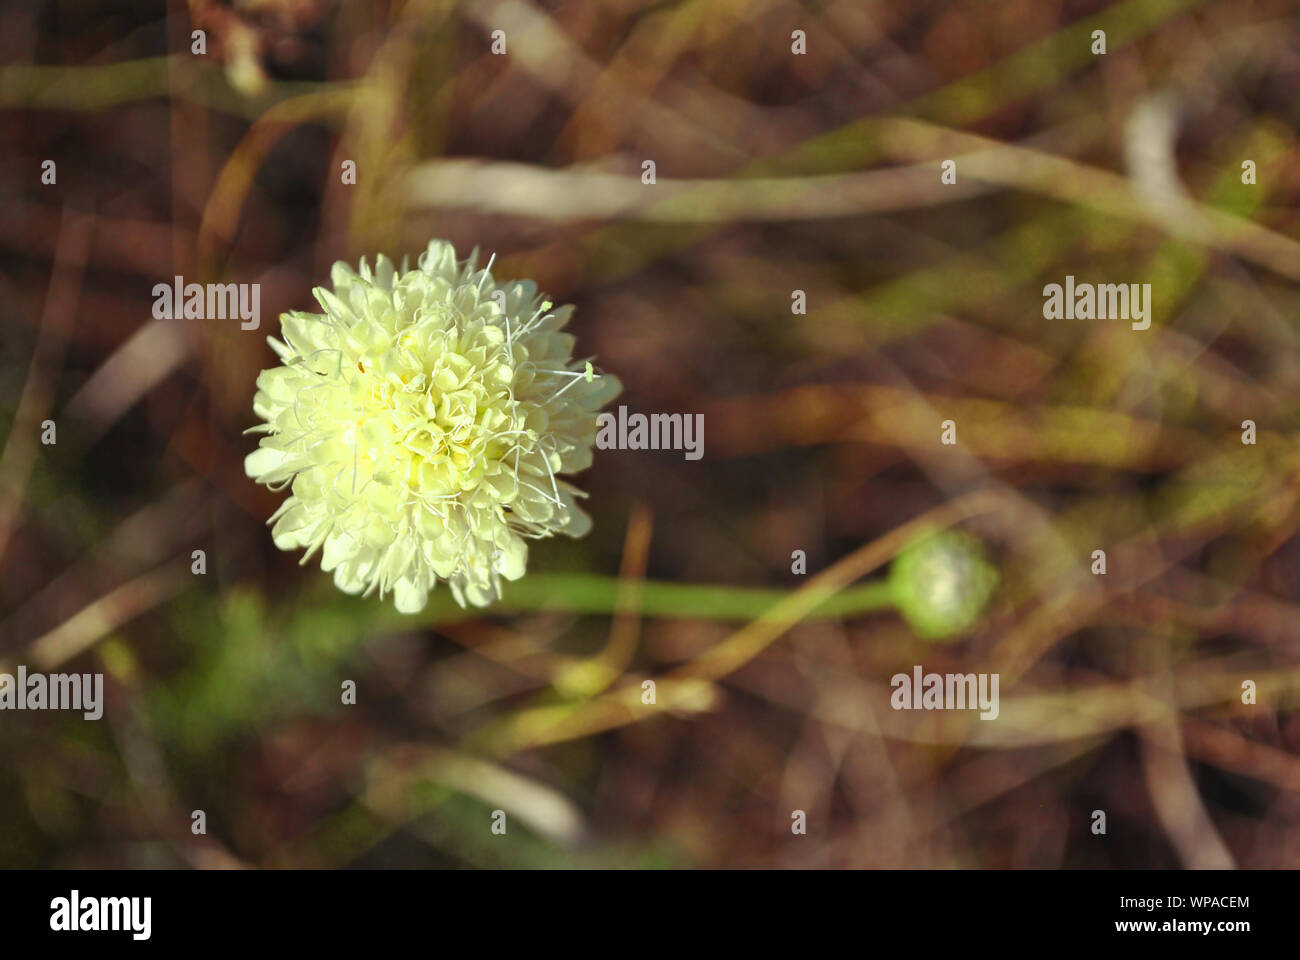 Cephalaria fiore bianco blooming, close up macro dettaglio sul morbido sfondo sfocato, vista dall'alto Foto Stock